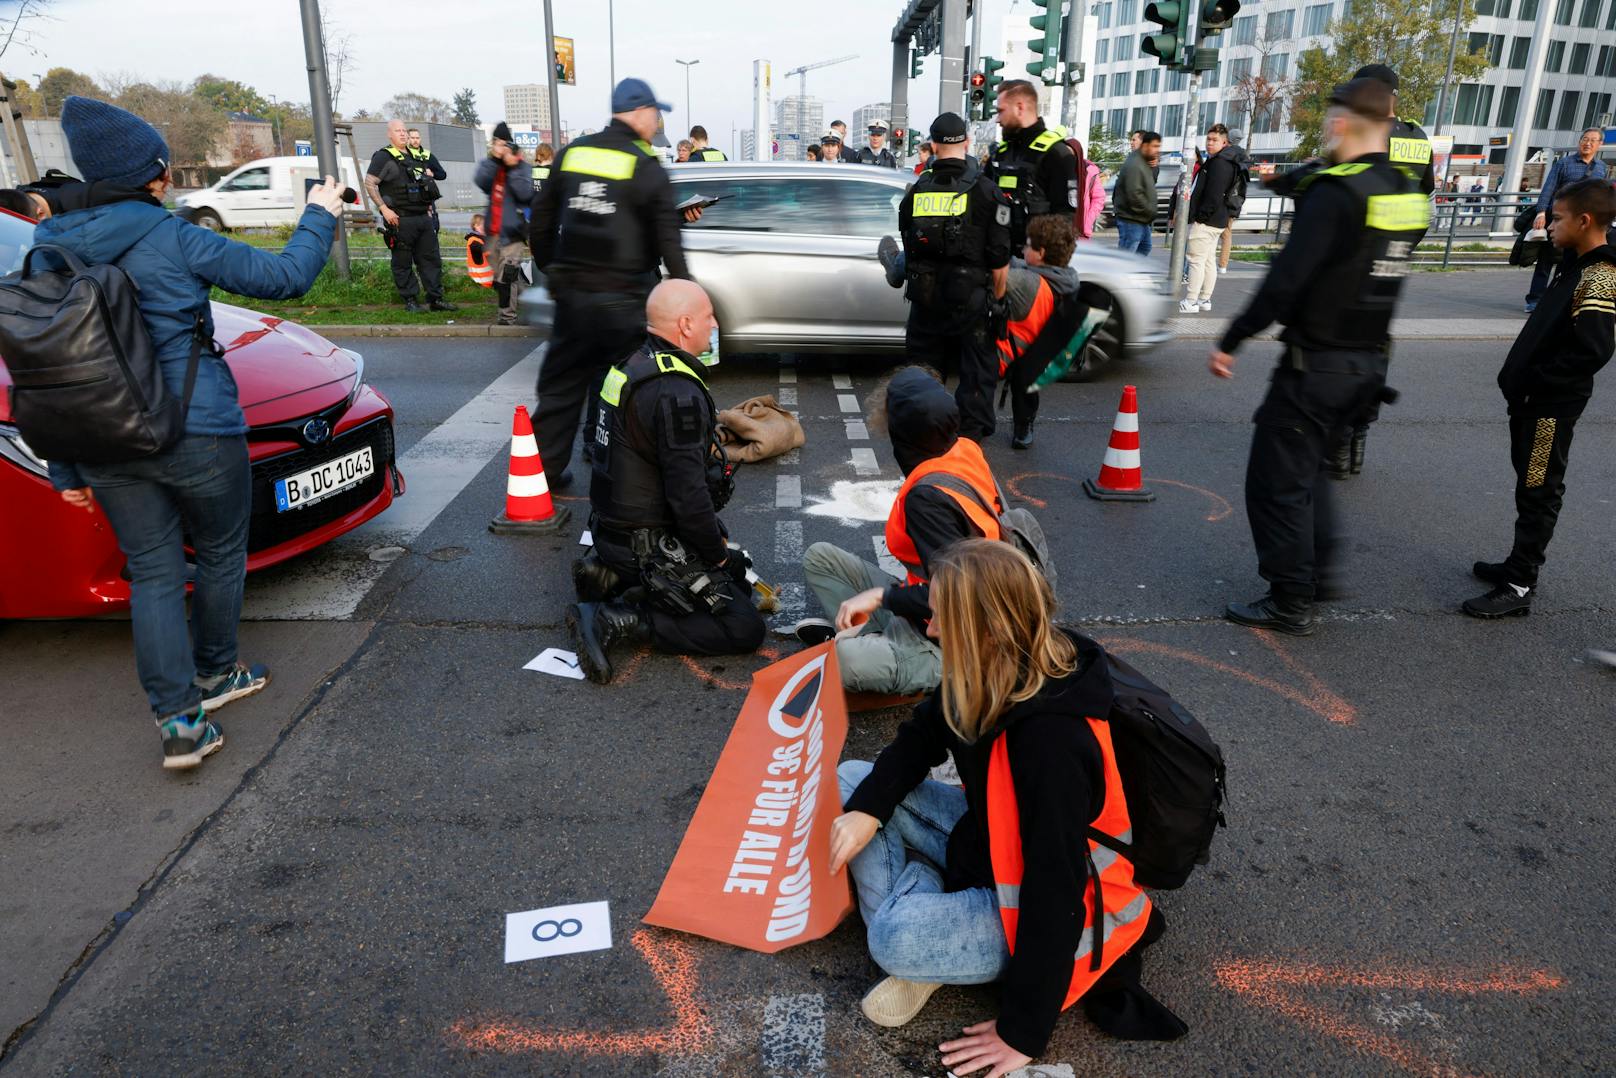 Die Straßen-Blockade hatte dramatische Folgen: Dringendes Rettungsgerät kam zu spät, die Radfahrerin starb.